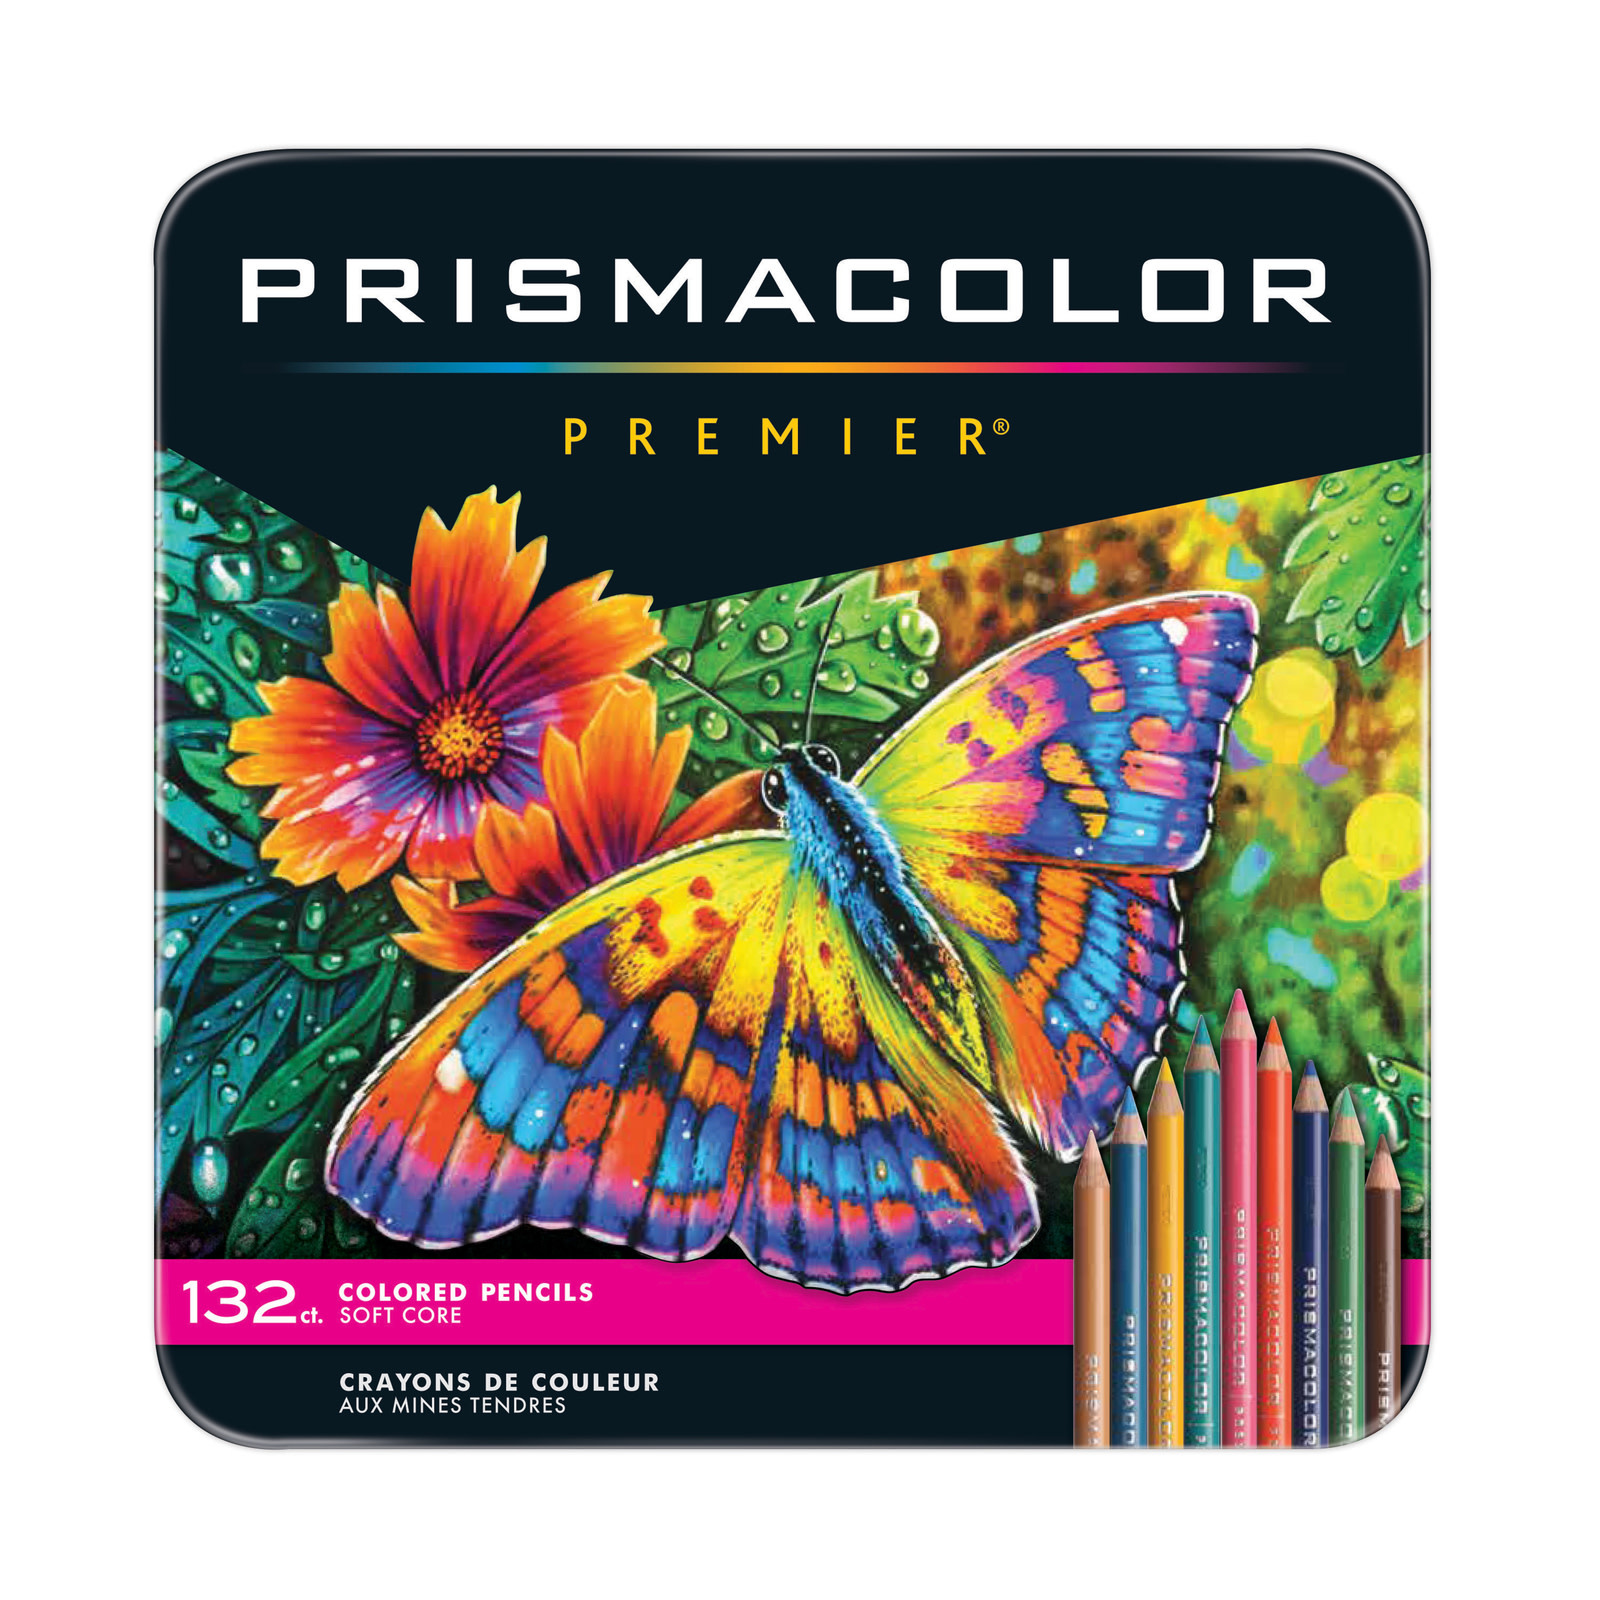 Prismacolor Premier Art Markers - 12pc set